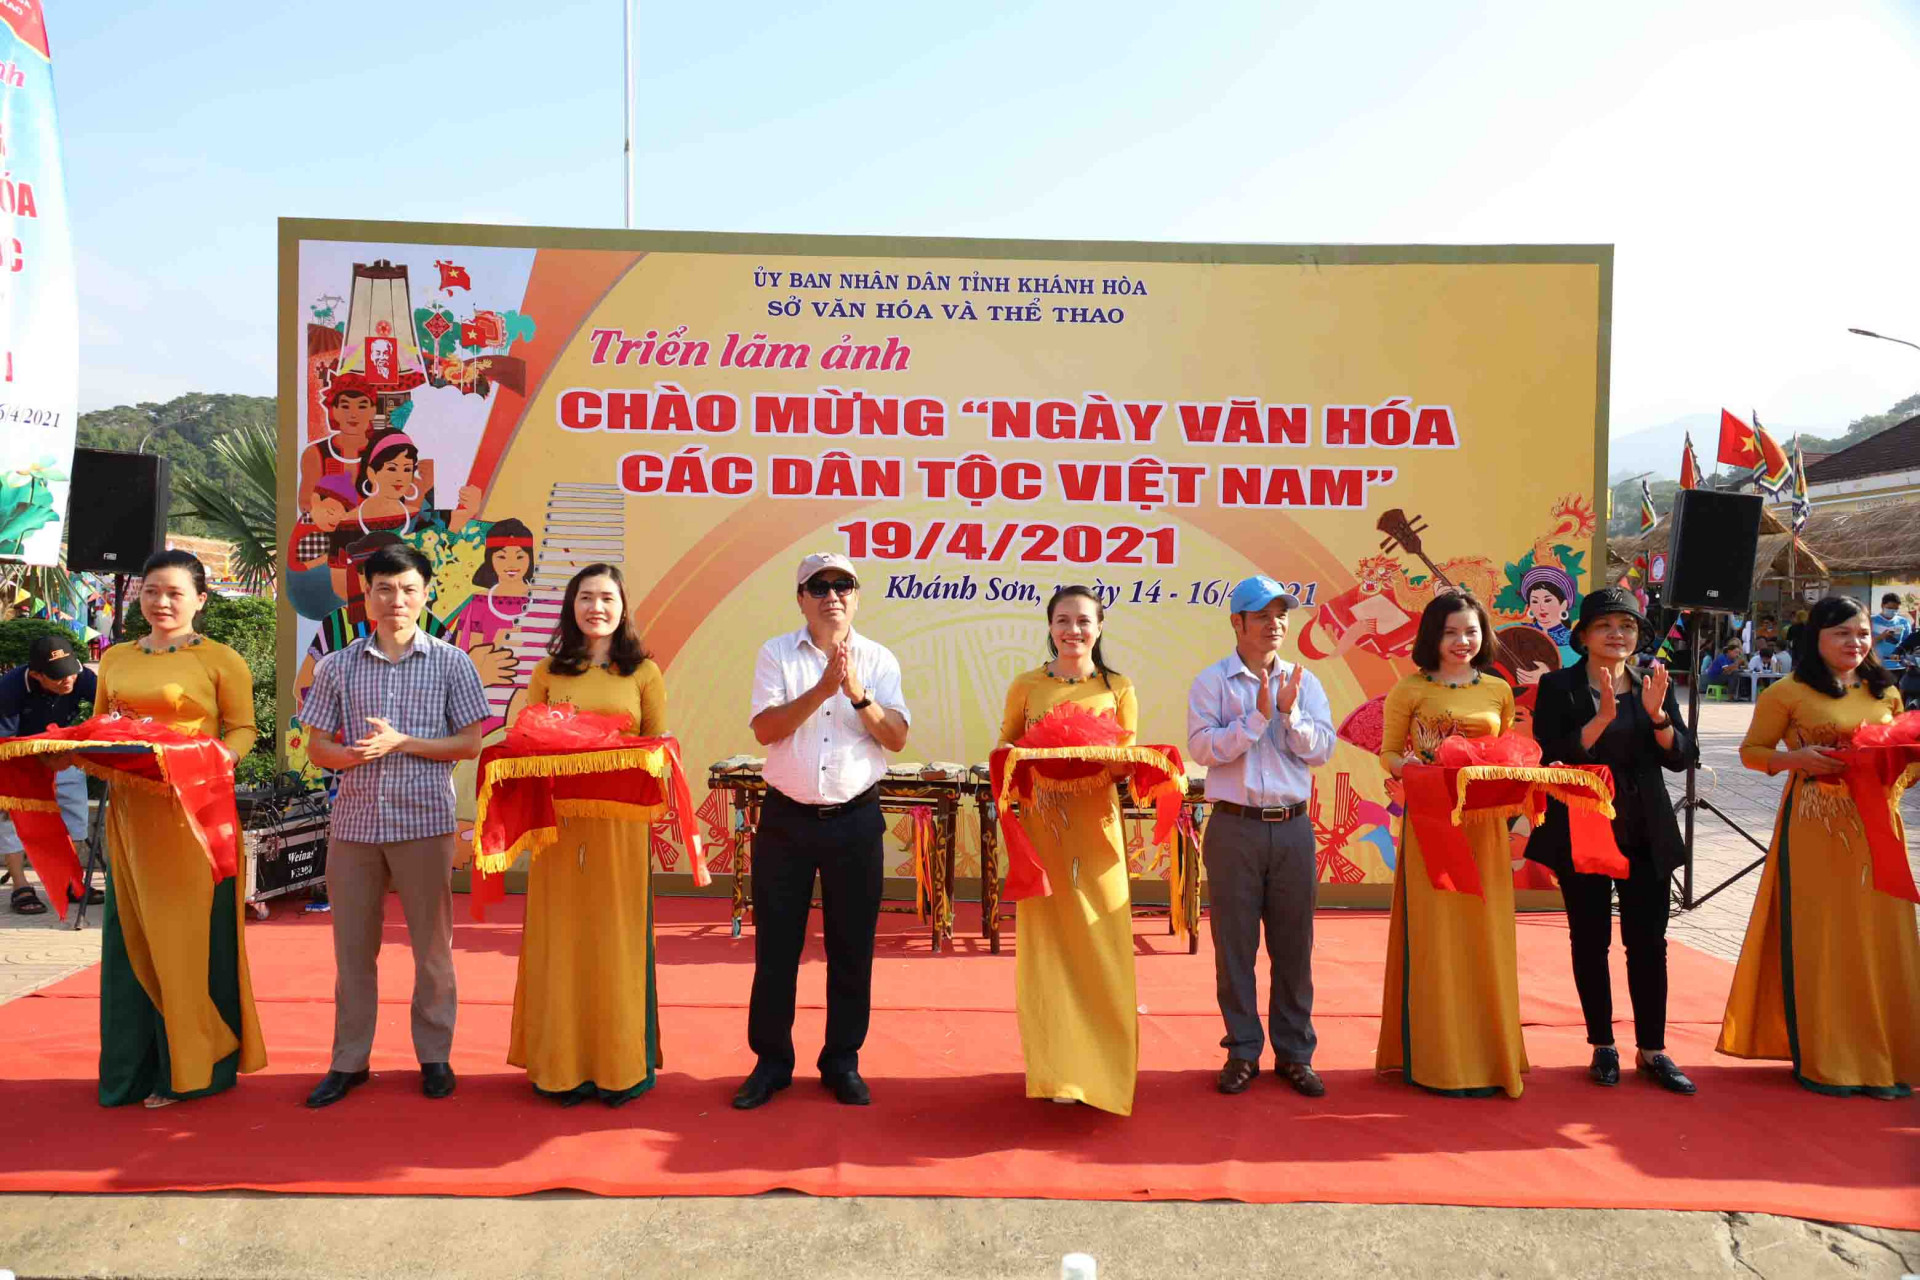 Nghi thức cắt băng khai mạc triển lãm ảnh chào mừng Ngày văn hóa các dân tộc Việt Nam. 